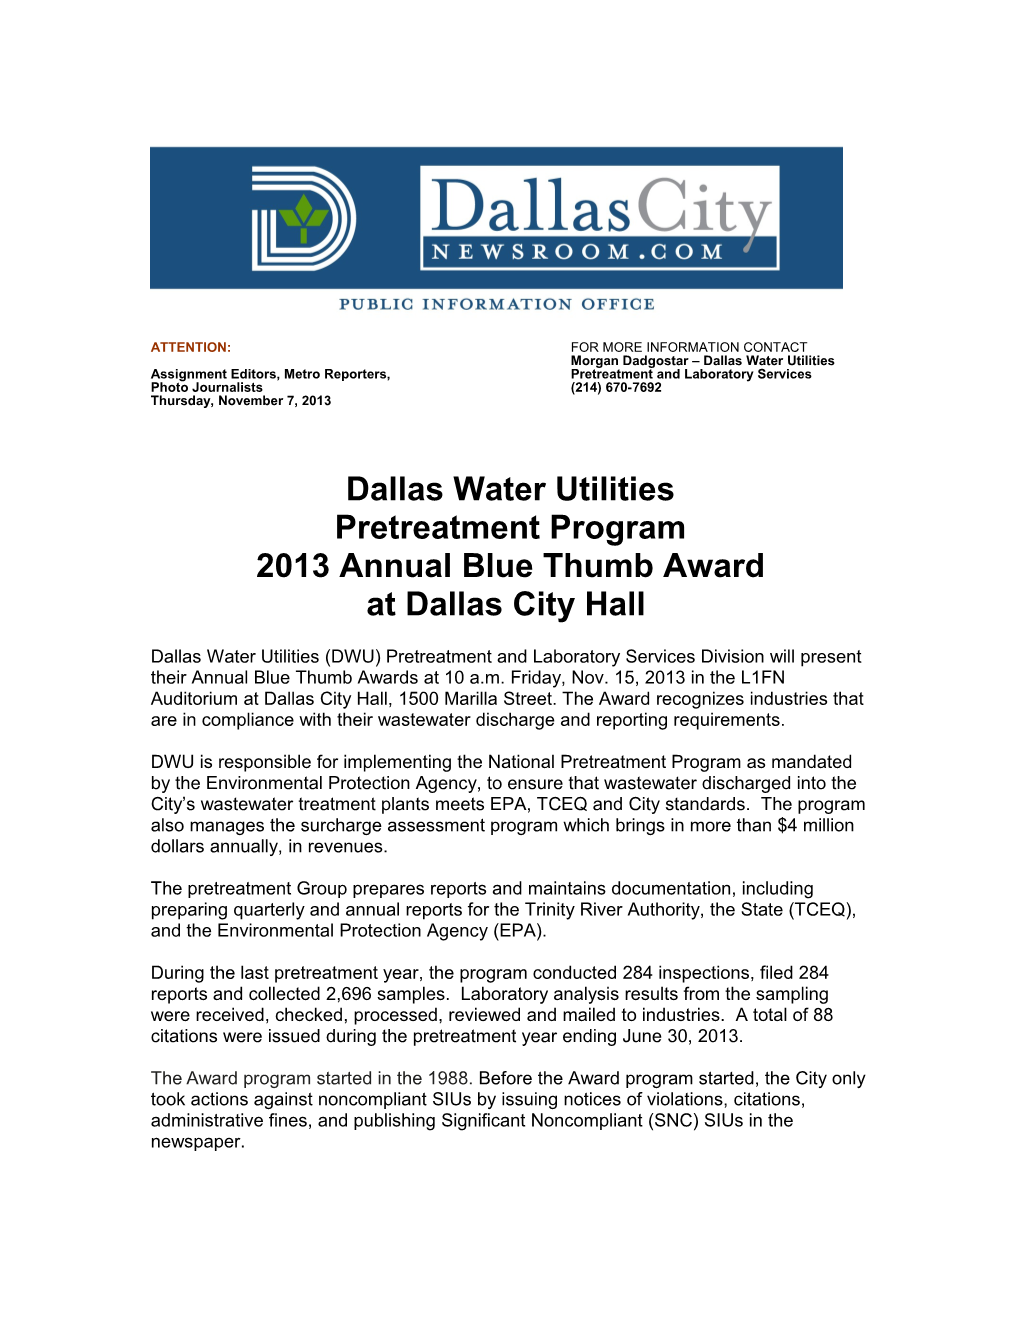 Morgan Dadgostar Dallas Water Utilities